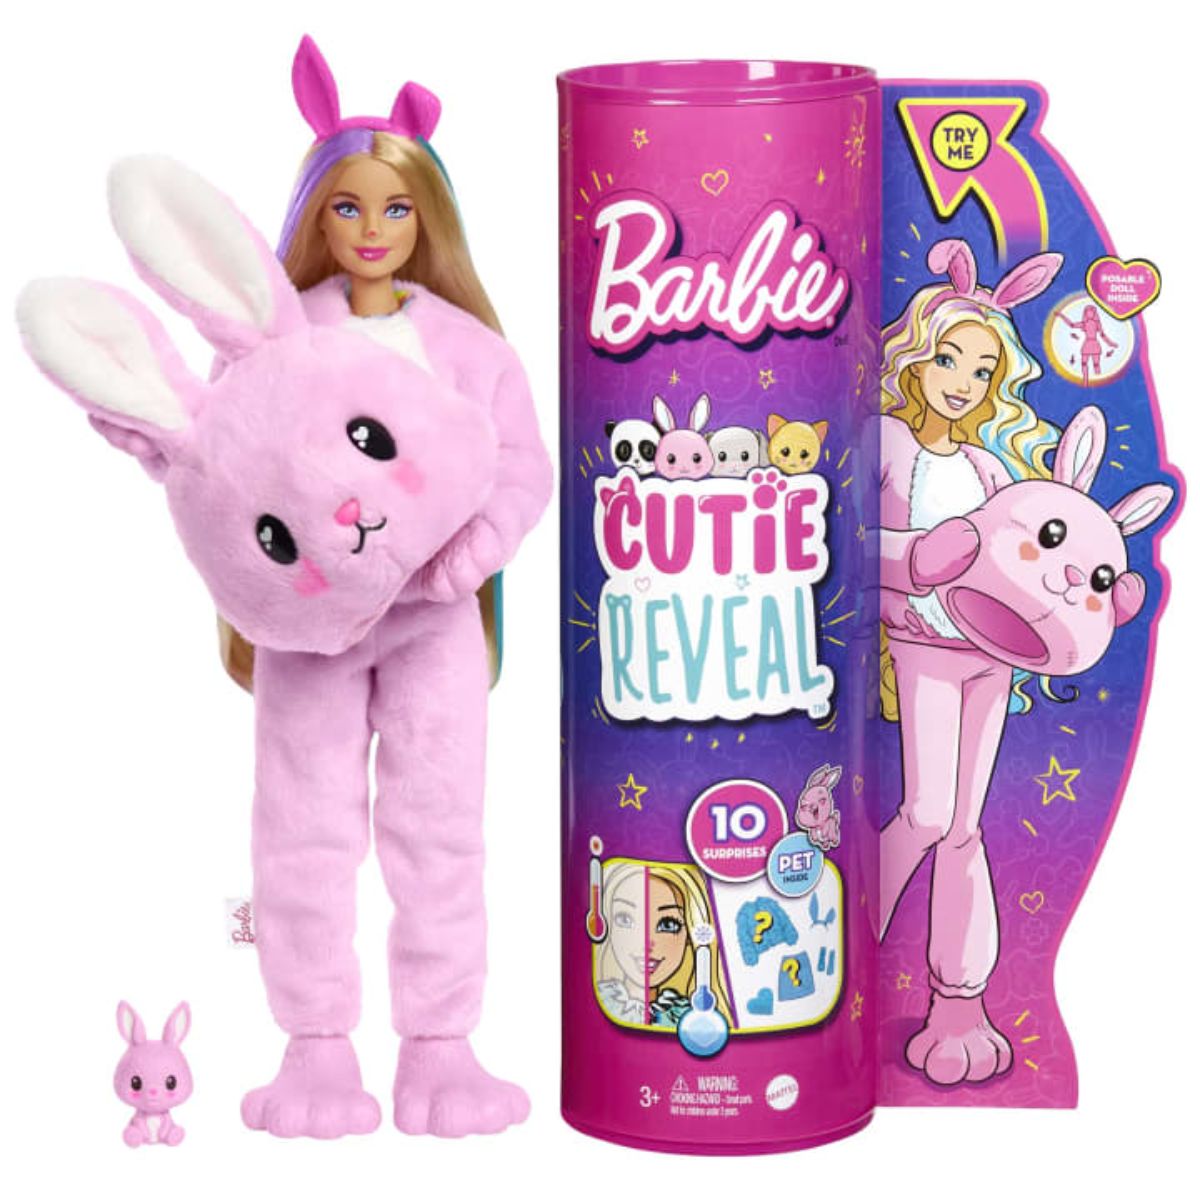 Papusa Barbie Cutie Reveal in costum de Iepuras, cu 10 surprize Barbie